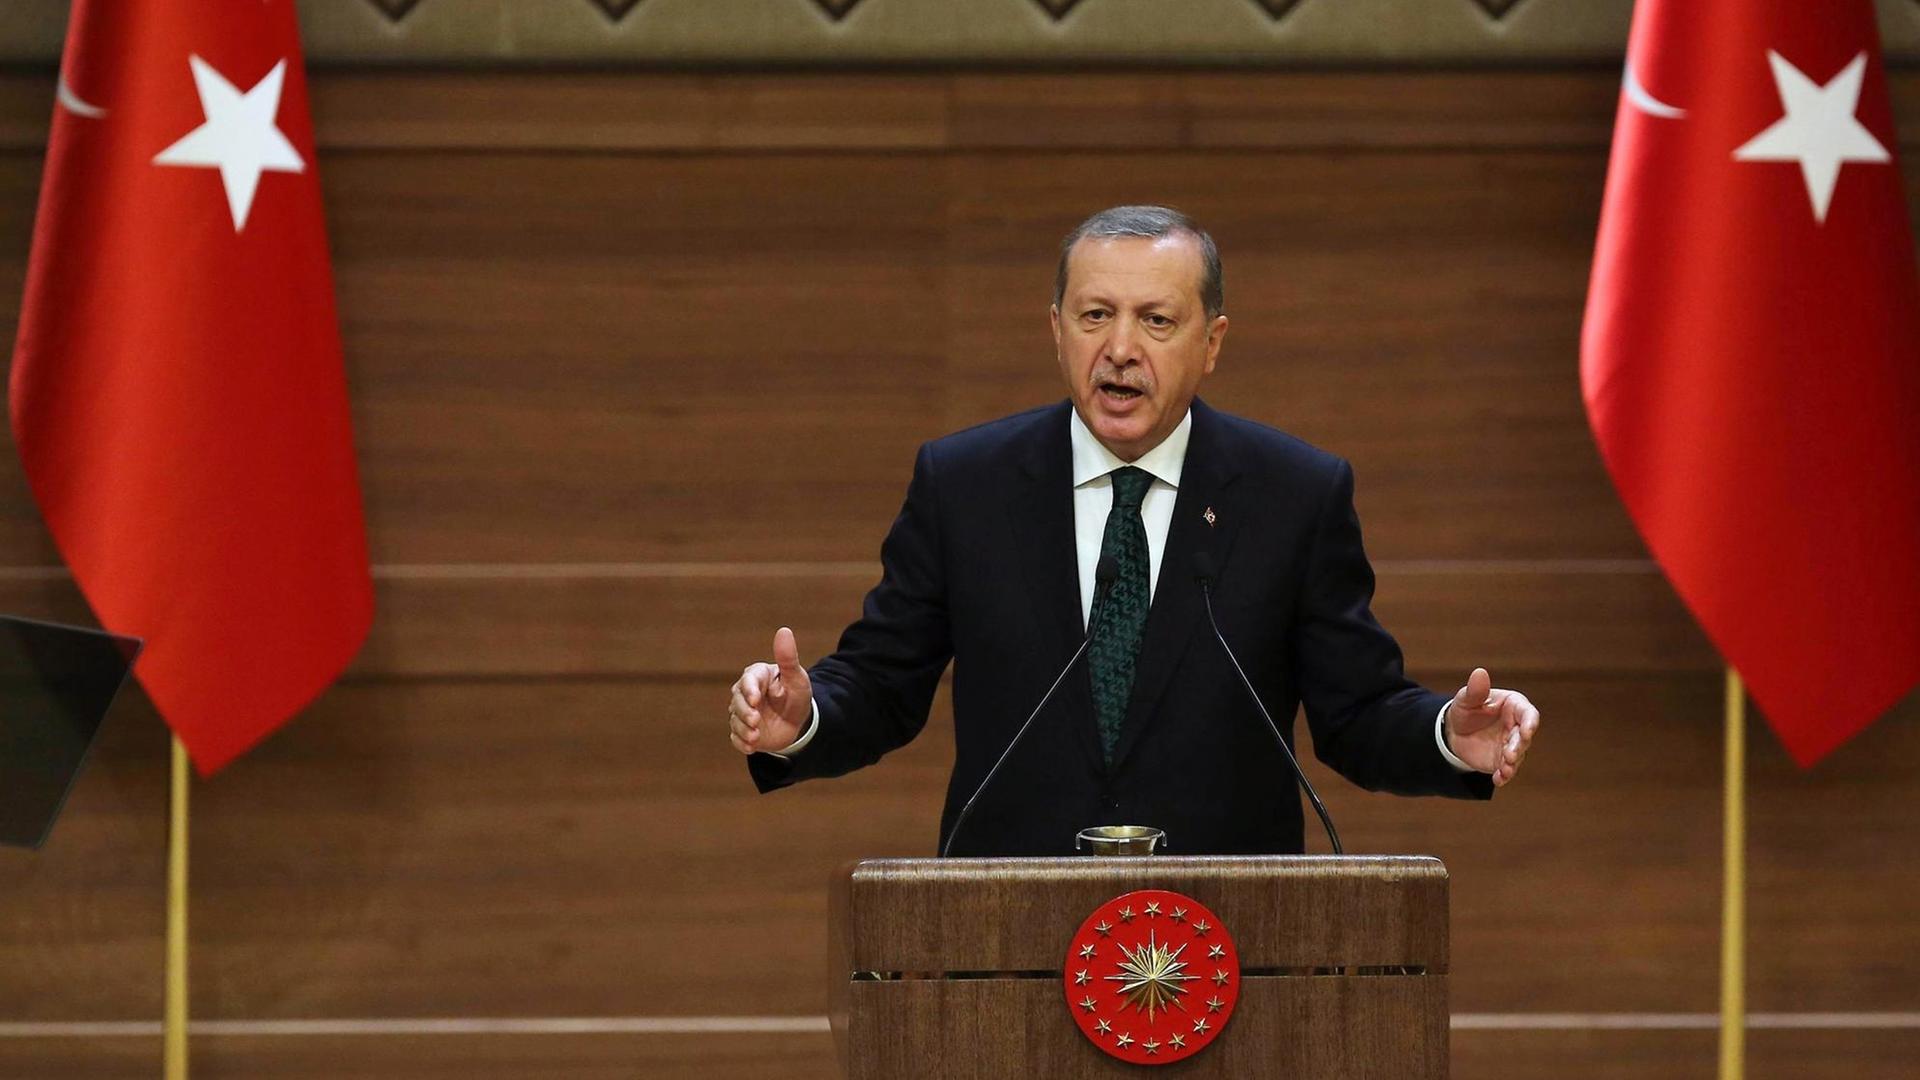 Der türkische Präsident Recep Tayyip Erdogan gestikuliert während einer Rede im Präsidentenpalast.